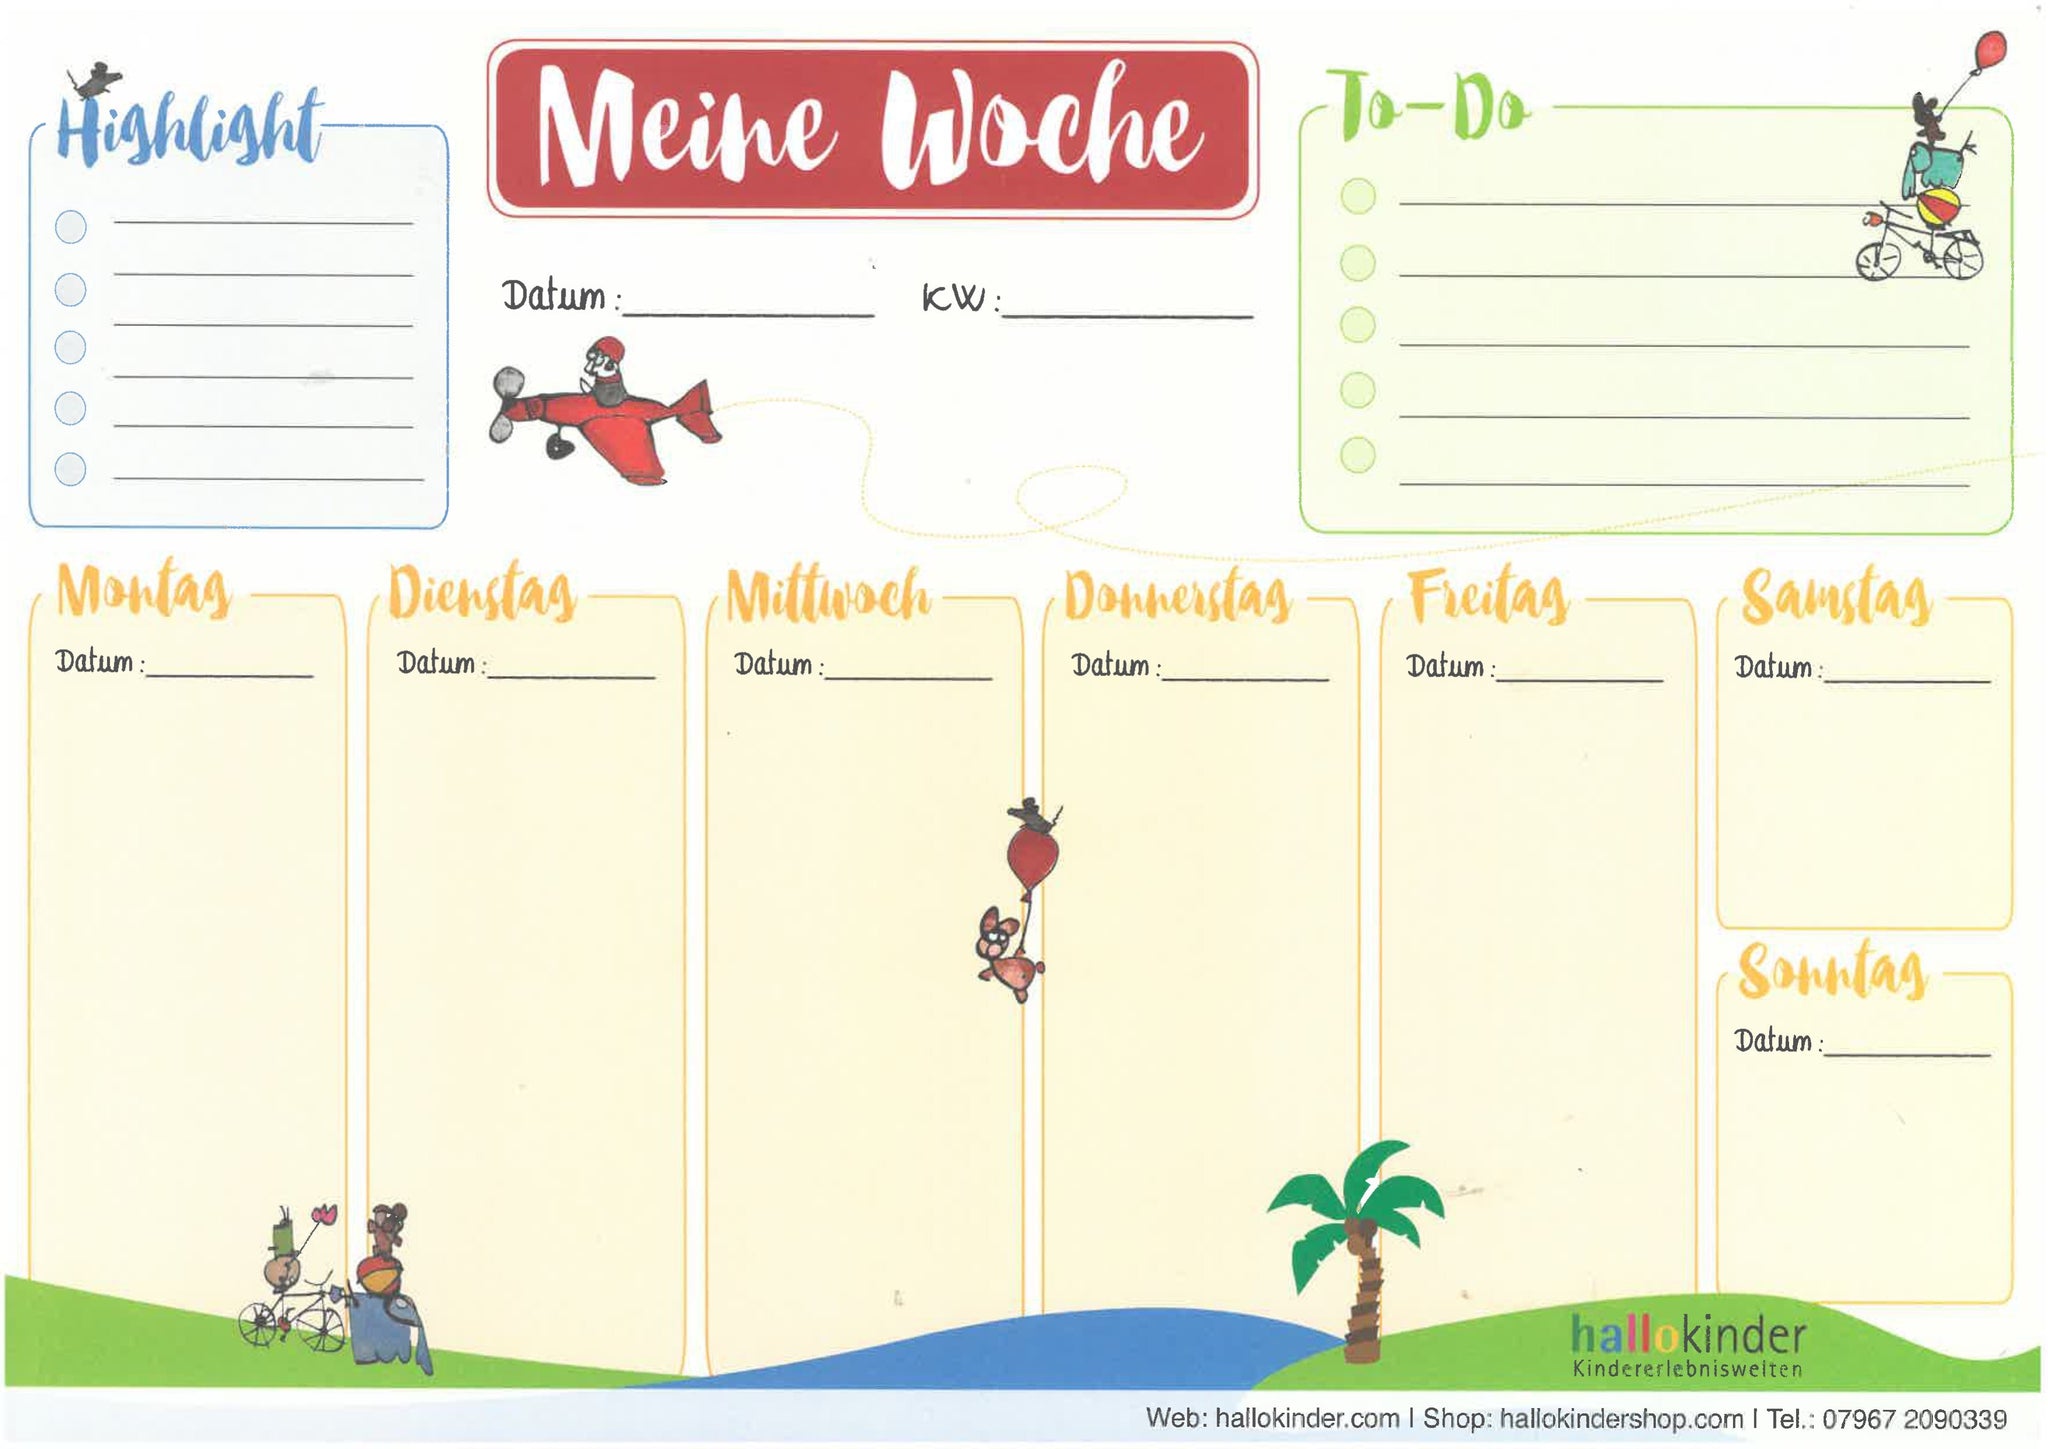 "Wochenplan / Wochenplaner der freudigen Aufgaben" DIN A4 OHNE Deckblatt - hallokindershop